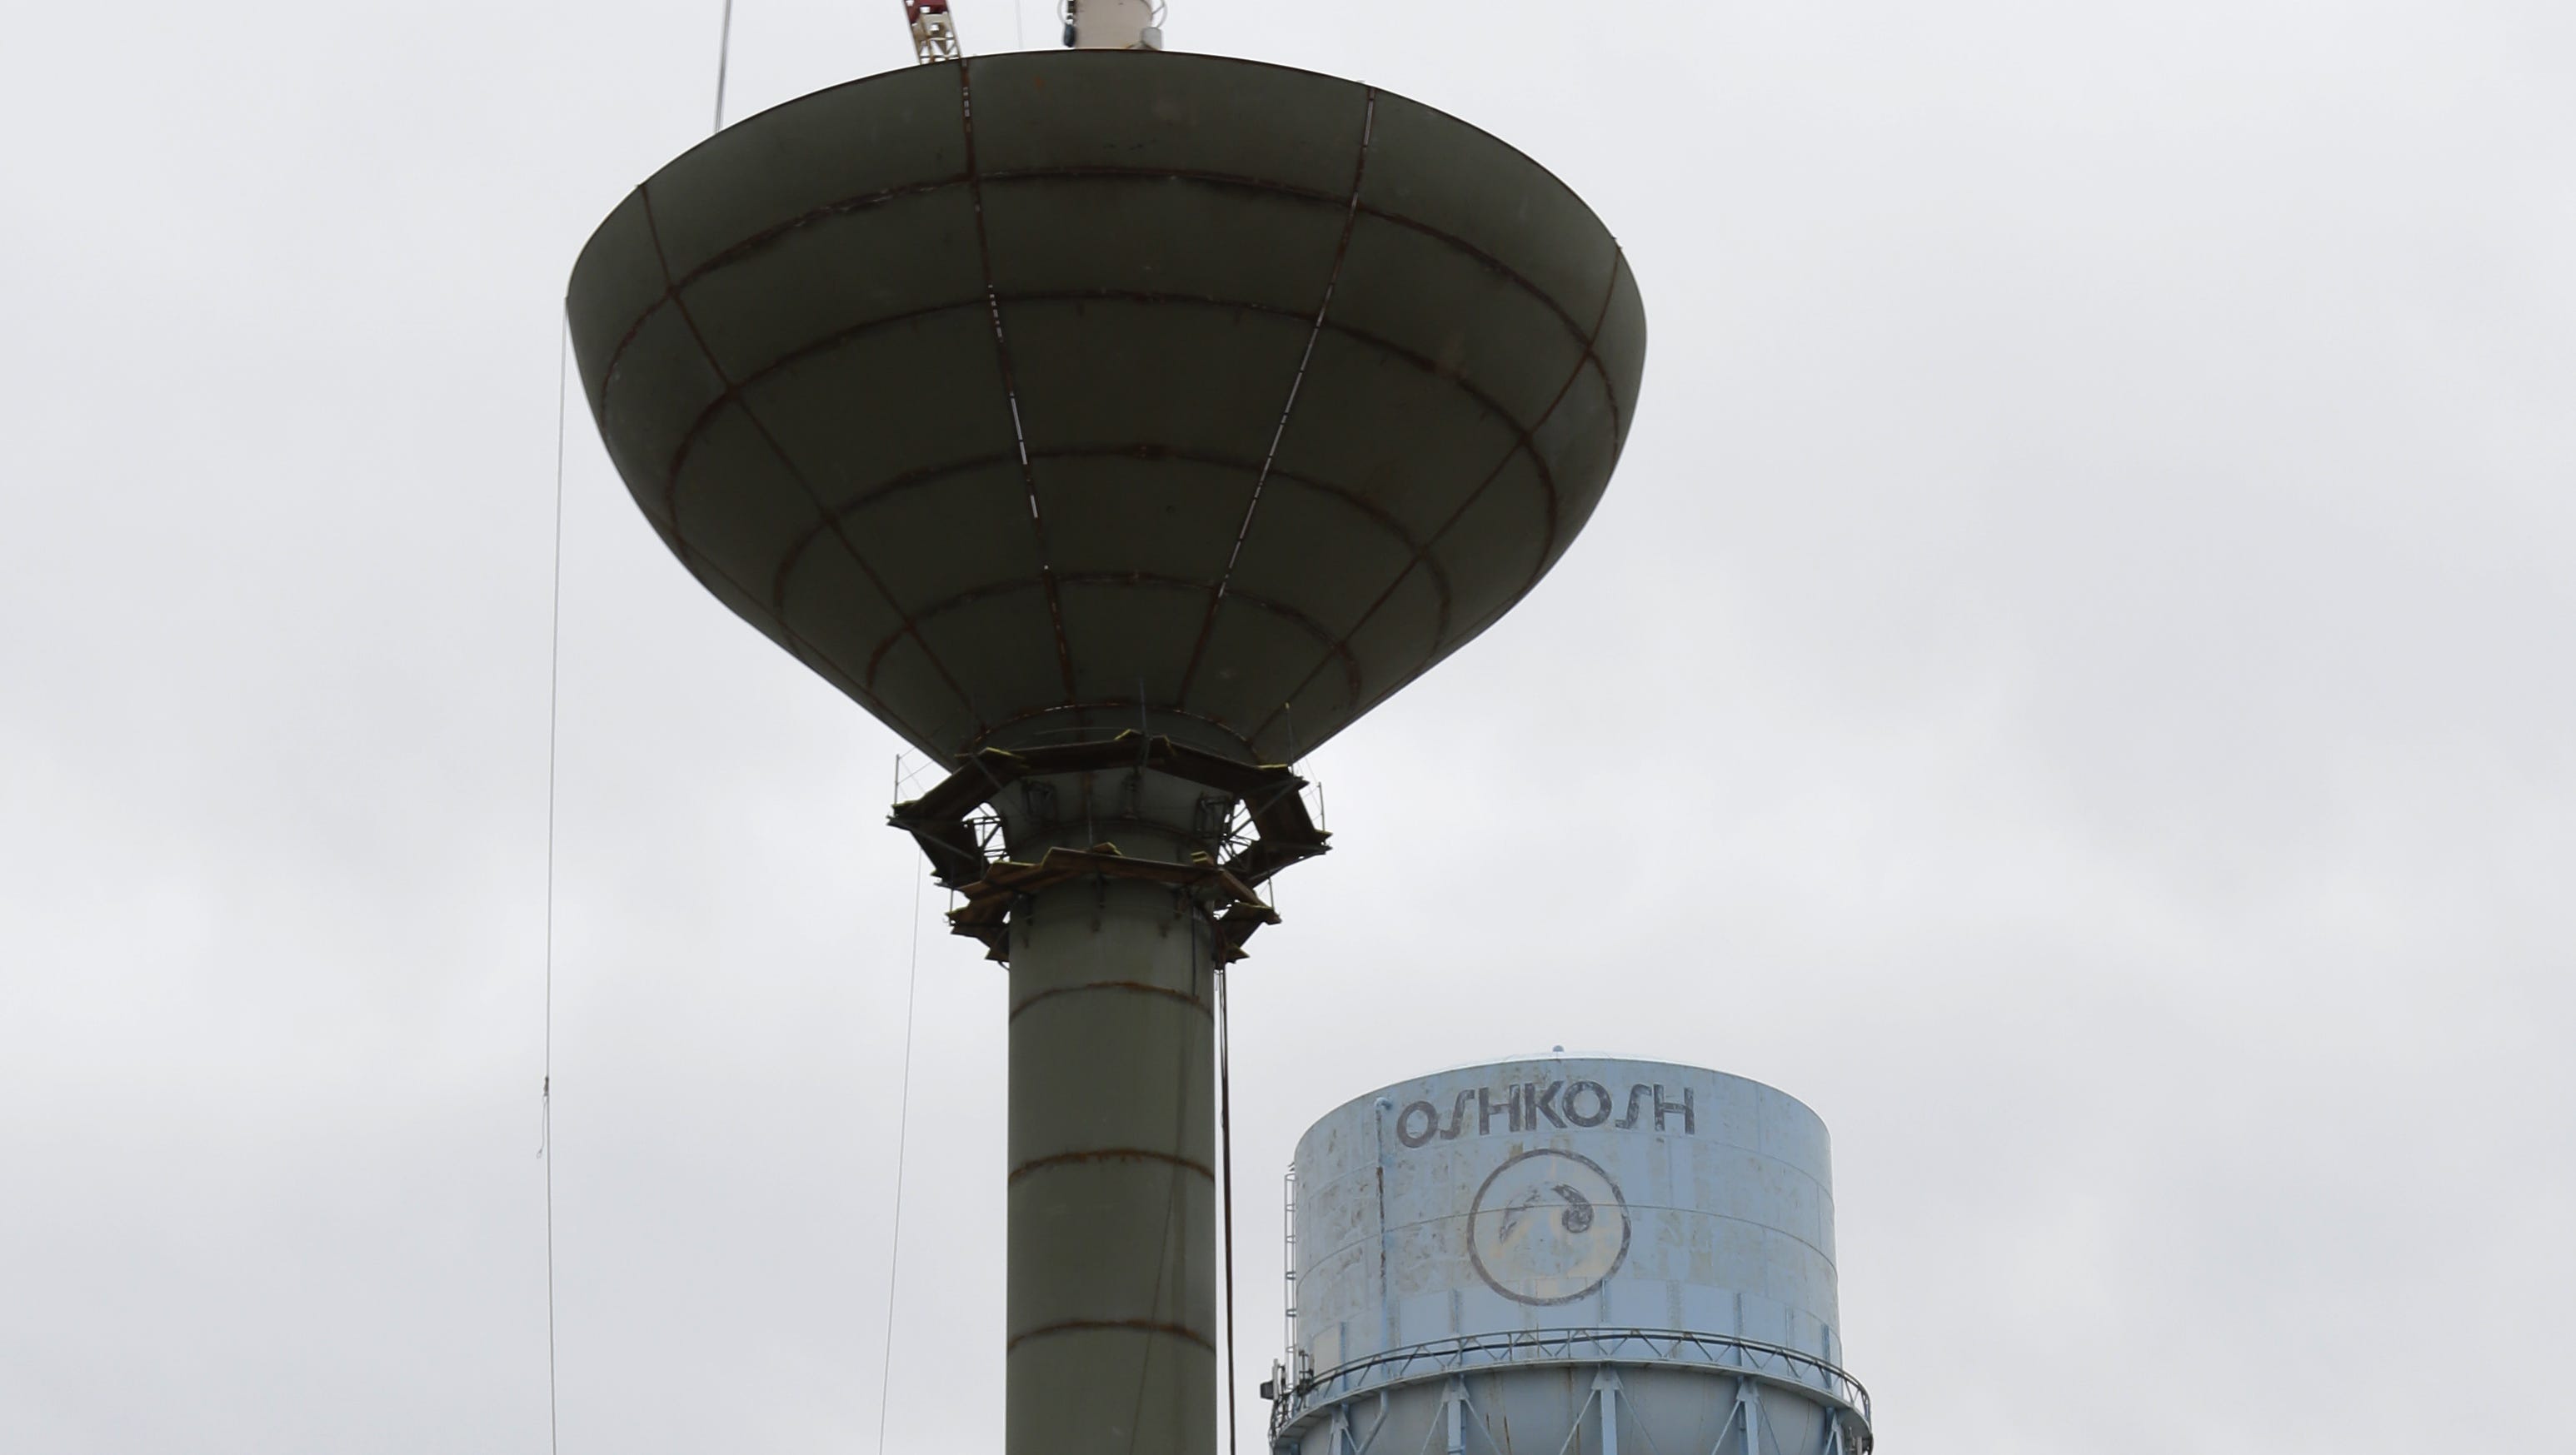 Work progresses on new Oshkosh water tower